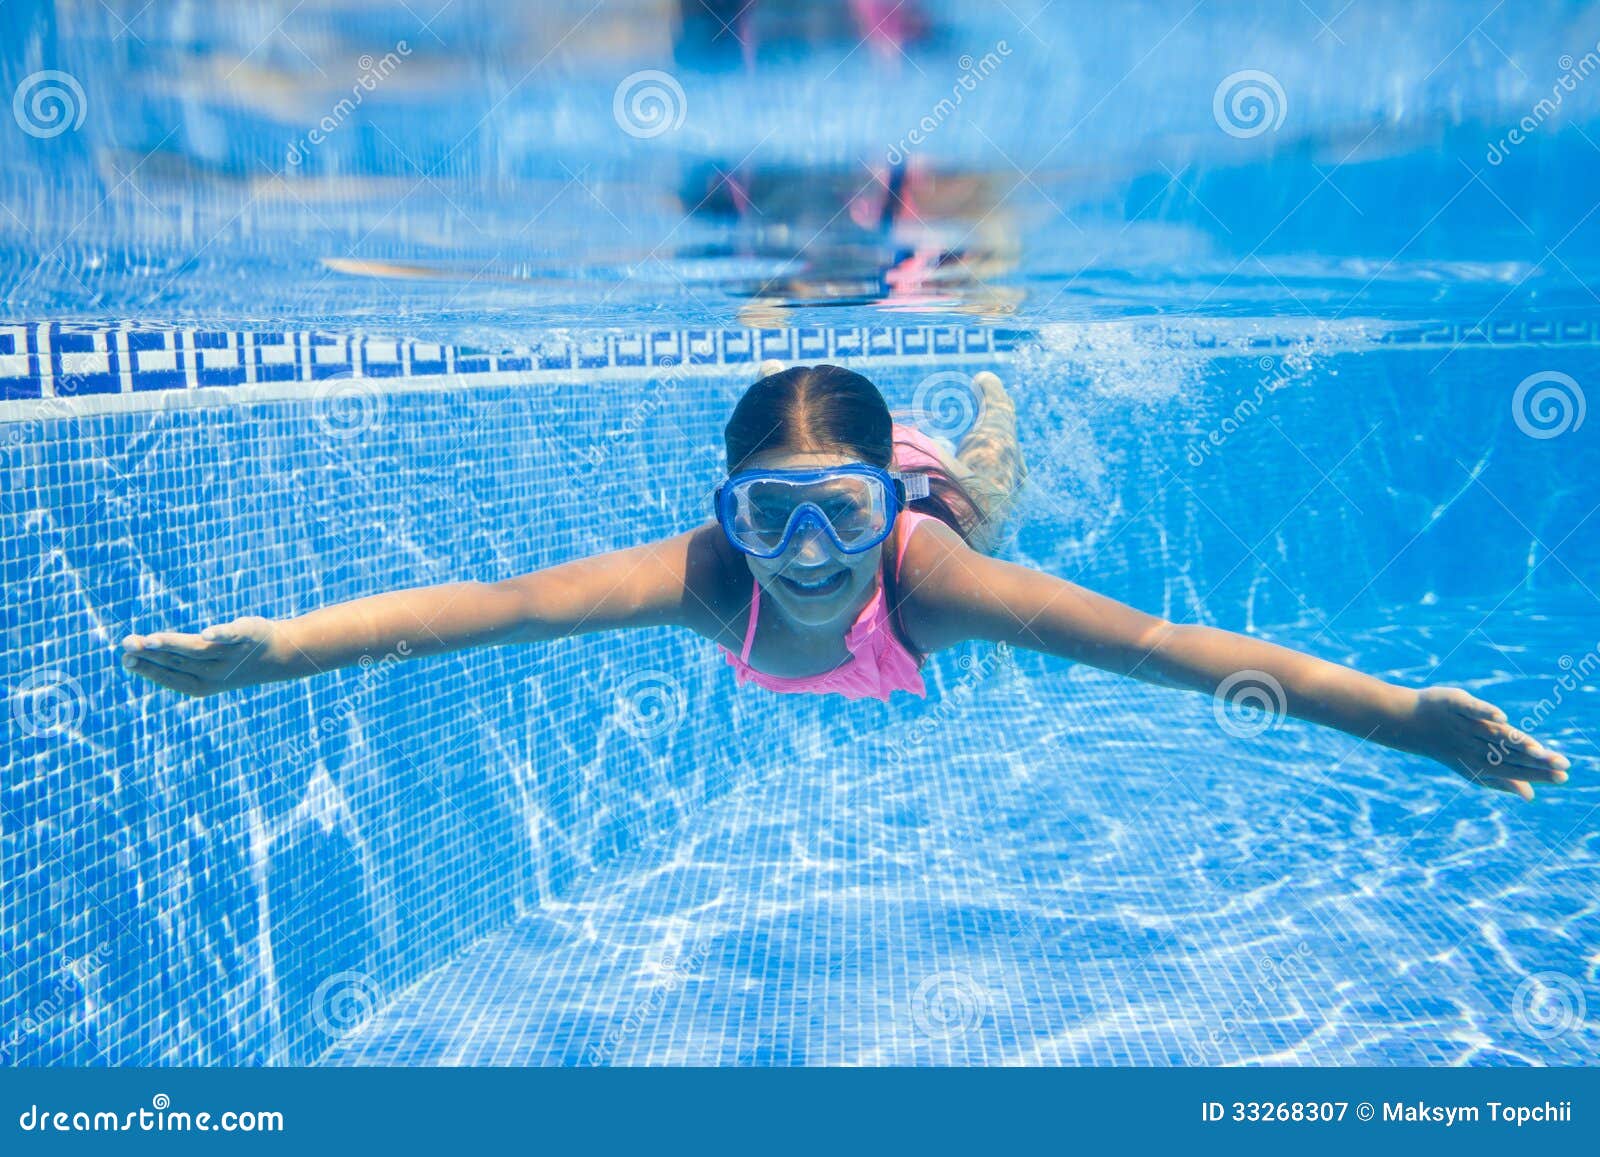 Температура после бассейна. Глаз бассейн. Костюм для пловцов после бассейна. Красные глаза в бассейне фото.